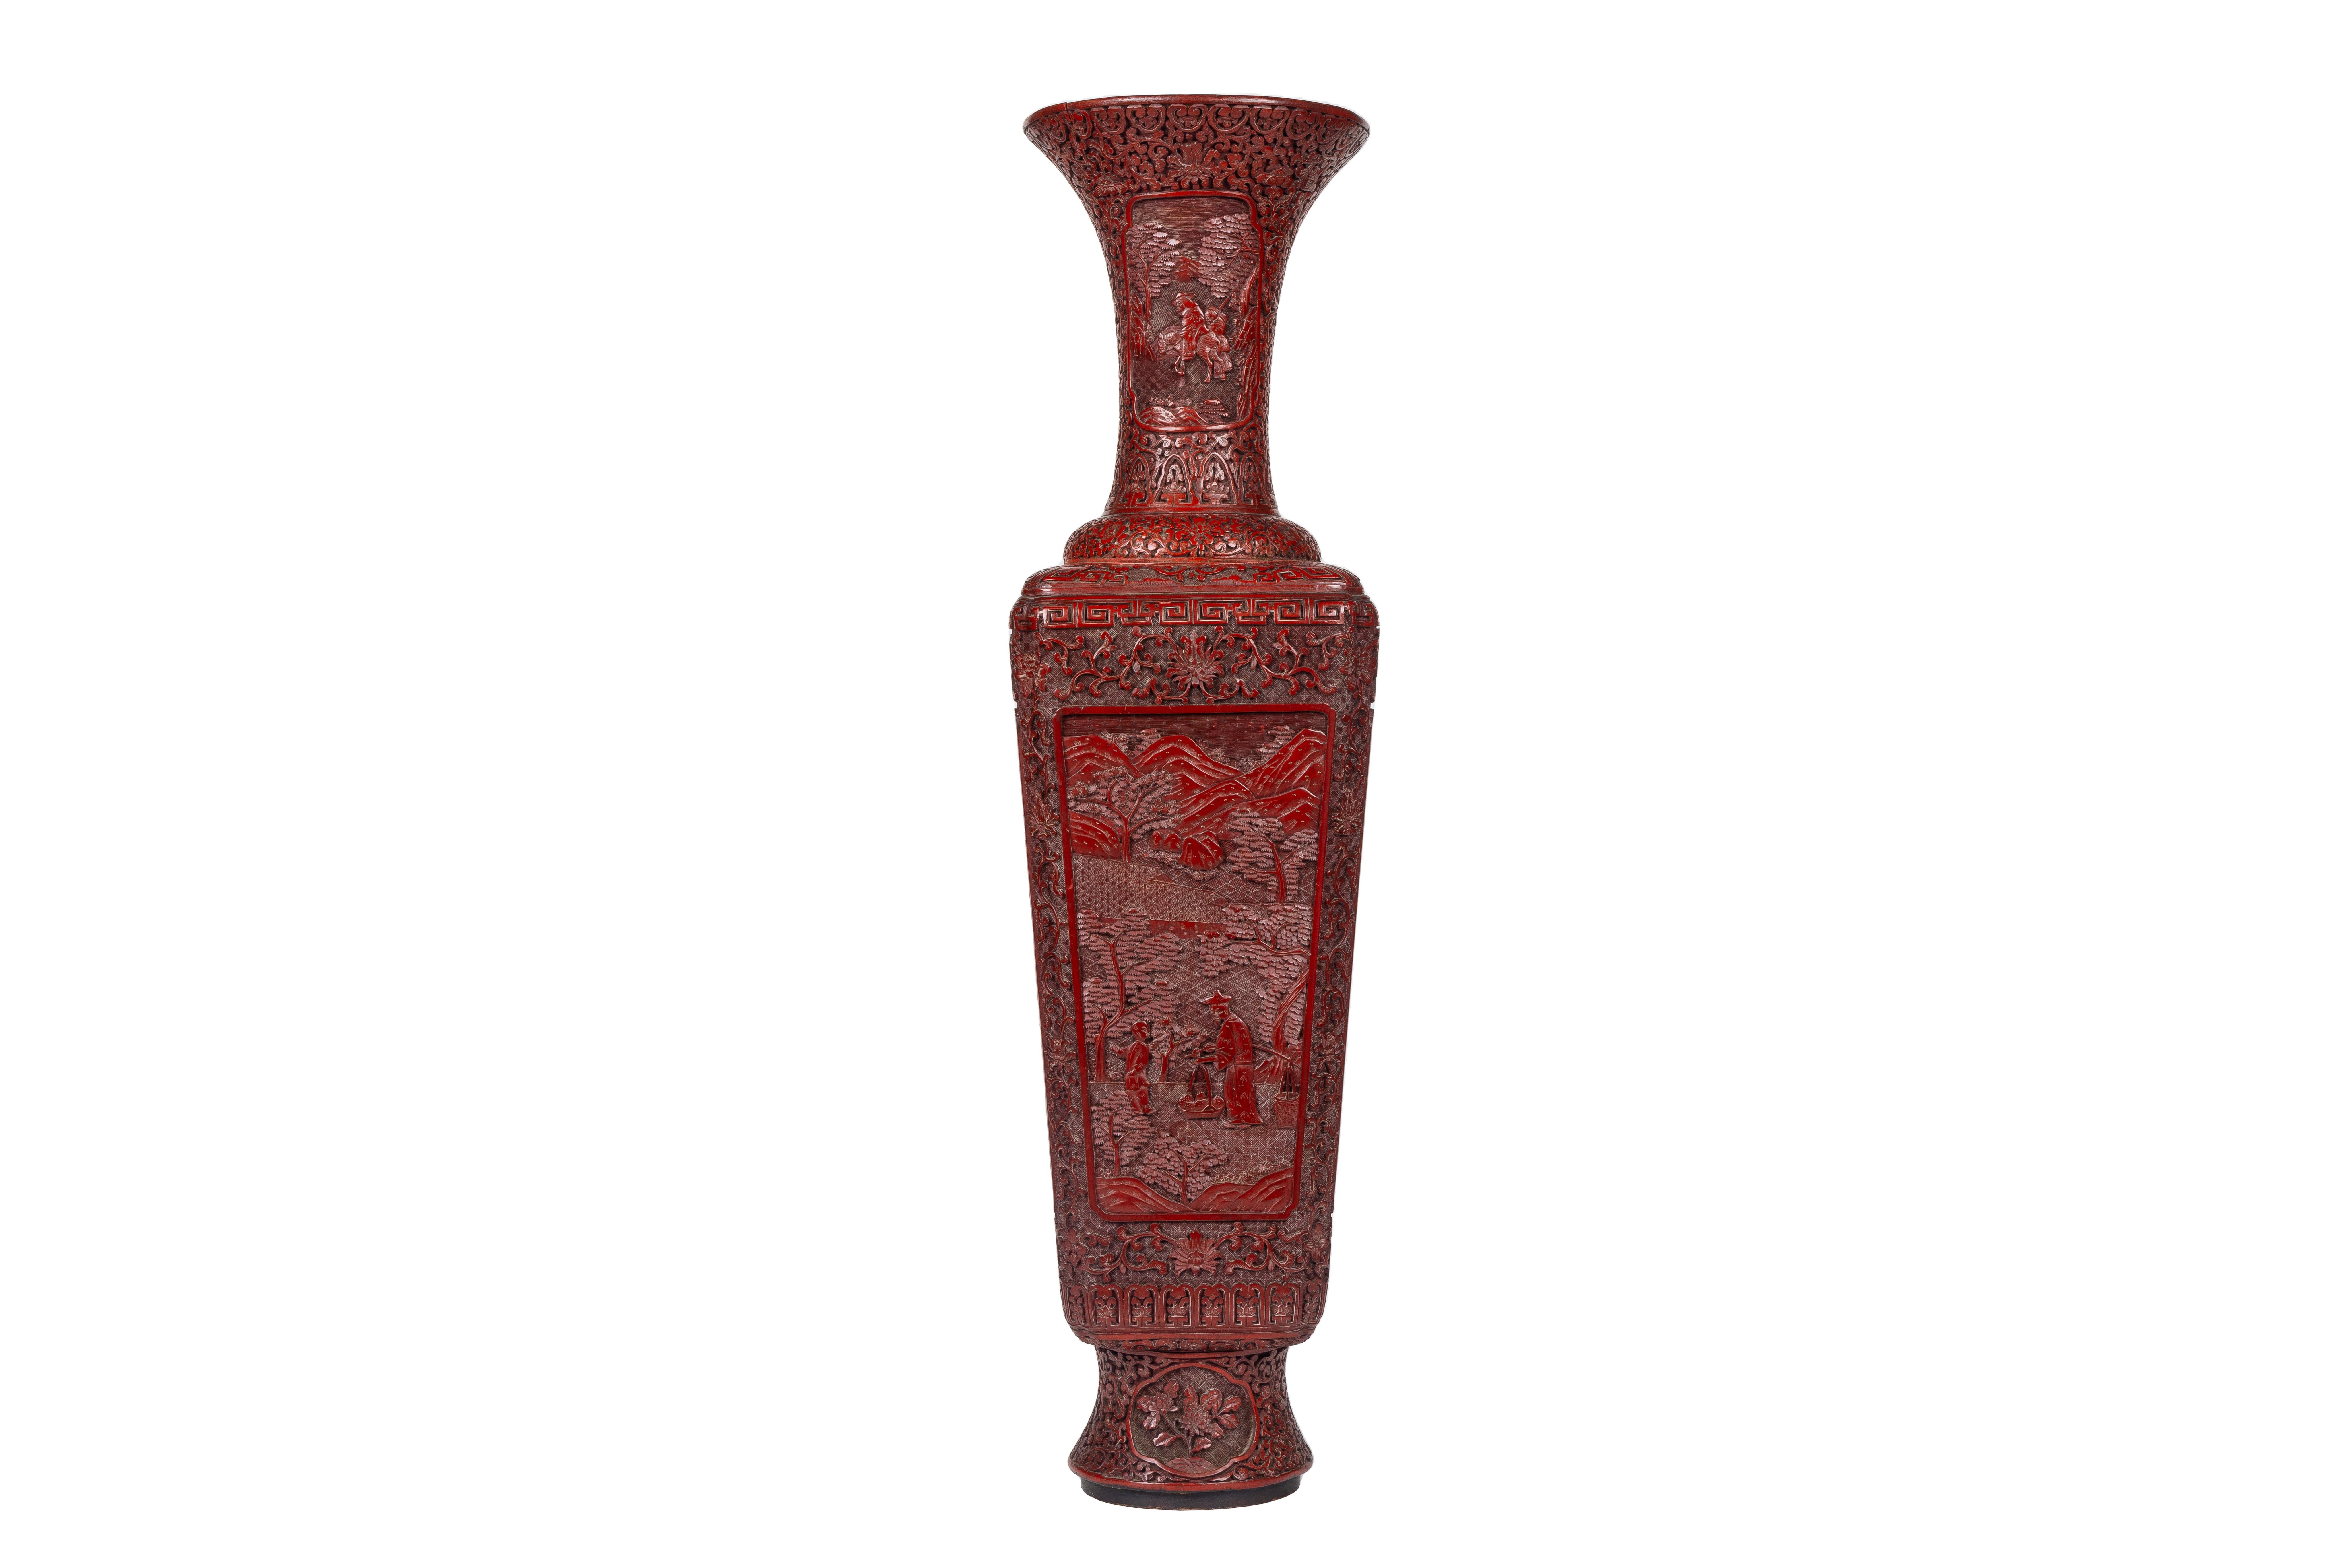 Wir stellen Ihnen ein außergewöhnliches und äußerst seltenes Paar chinesischer Lackvasen mit Zinnoberschnitzerei aus der Qianlong-Periode vor. Diese monumentalen Vasen sind prächtige Beispiele chinesischer Handwerkskunst und künstlerischer Finesse.